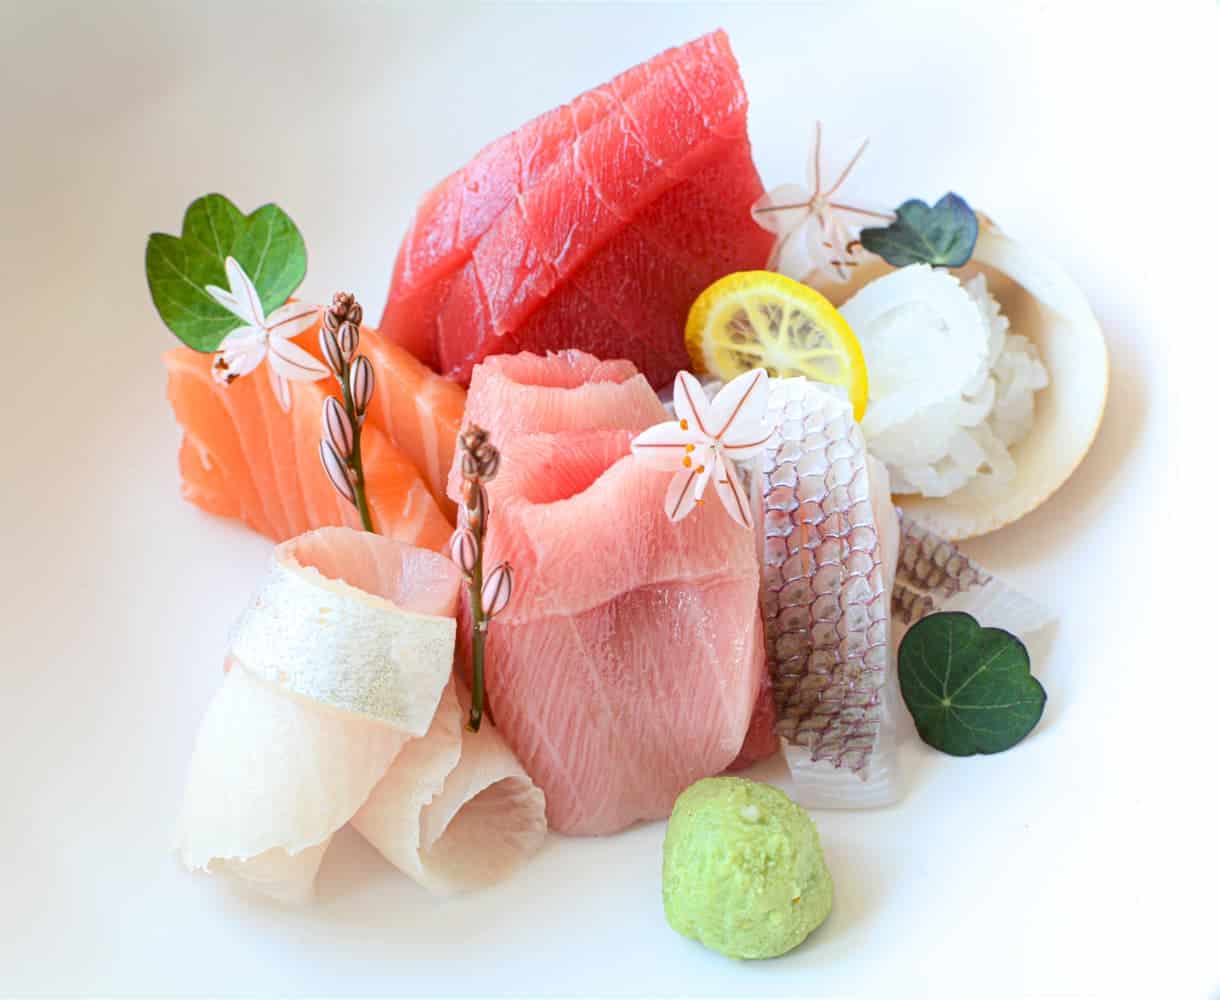 artfully plated sushi/sashimi selection